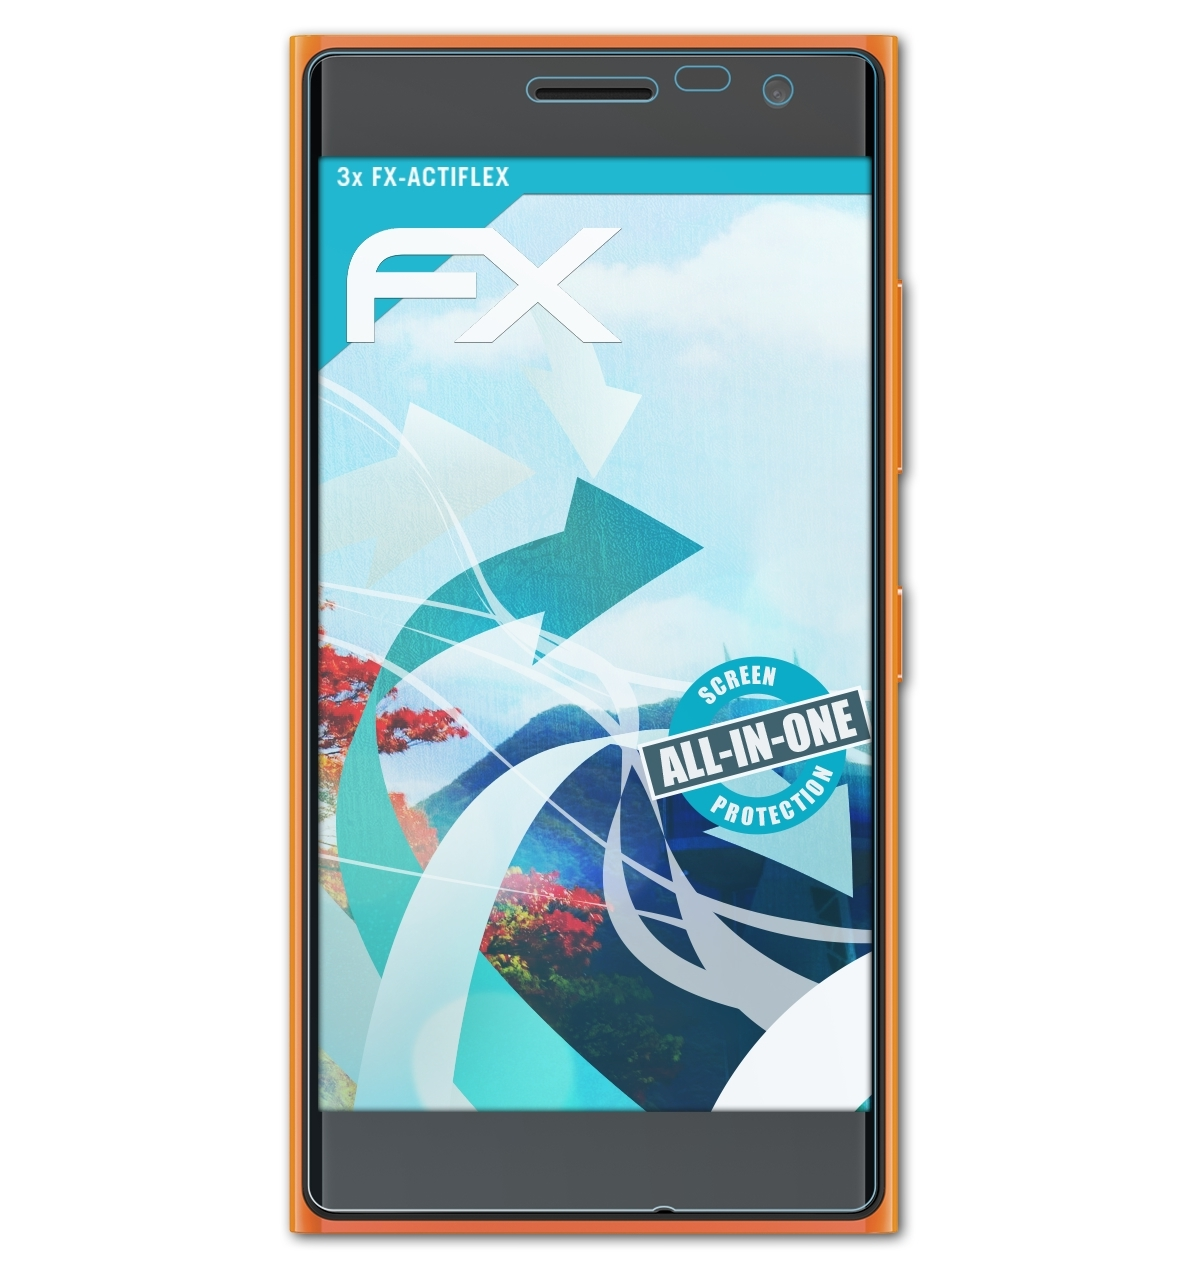 / FX-ActiFleX Lumia 735) Displayschutz(für 730 ATFOLIX Nokia 3x